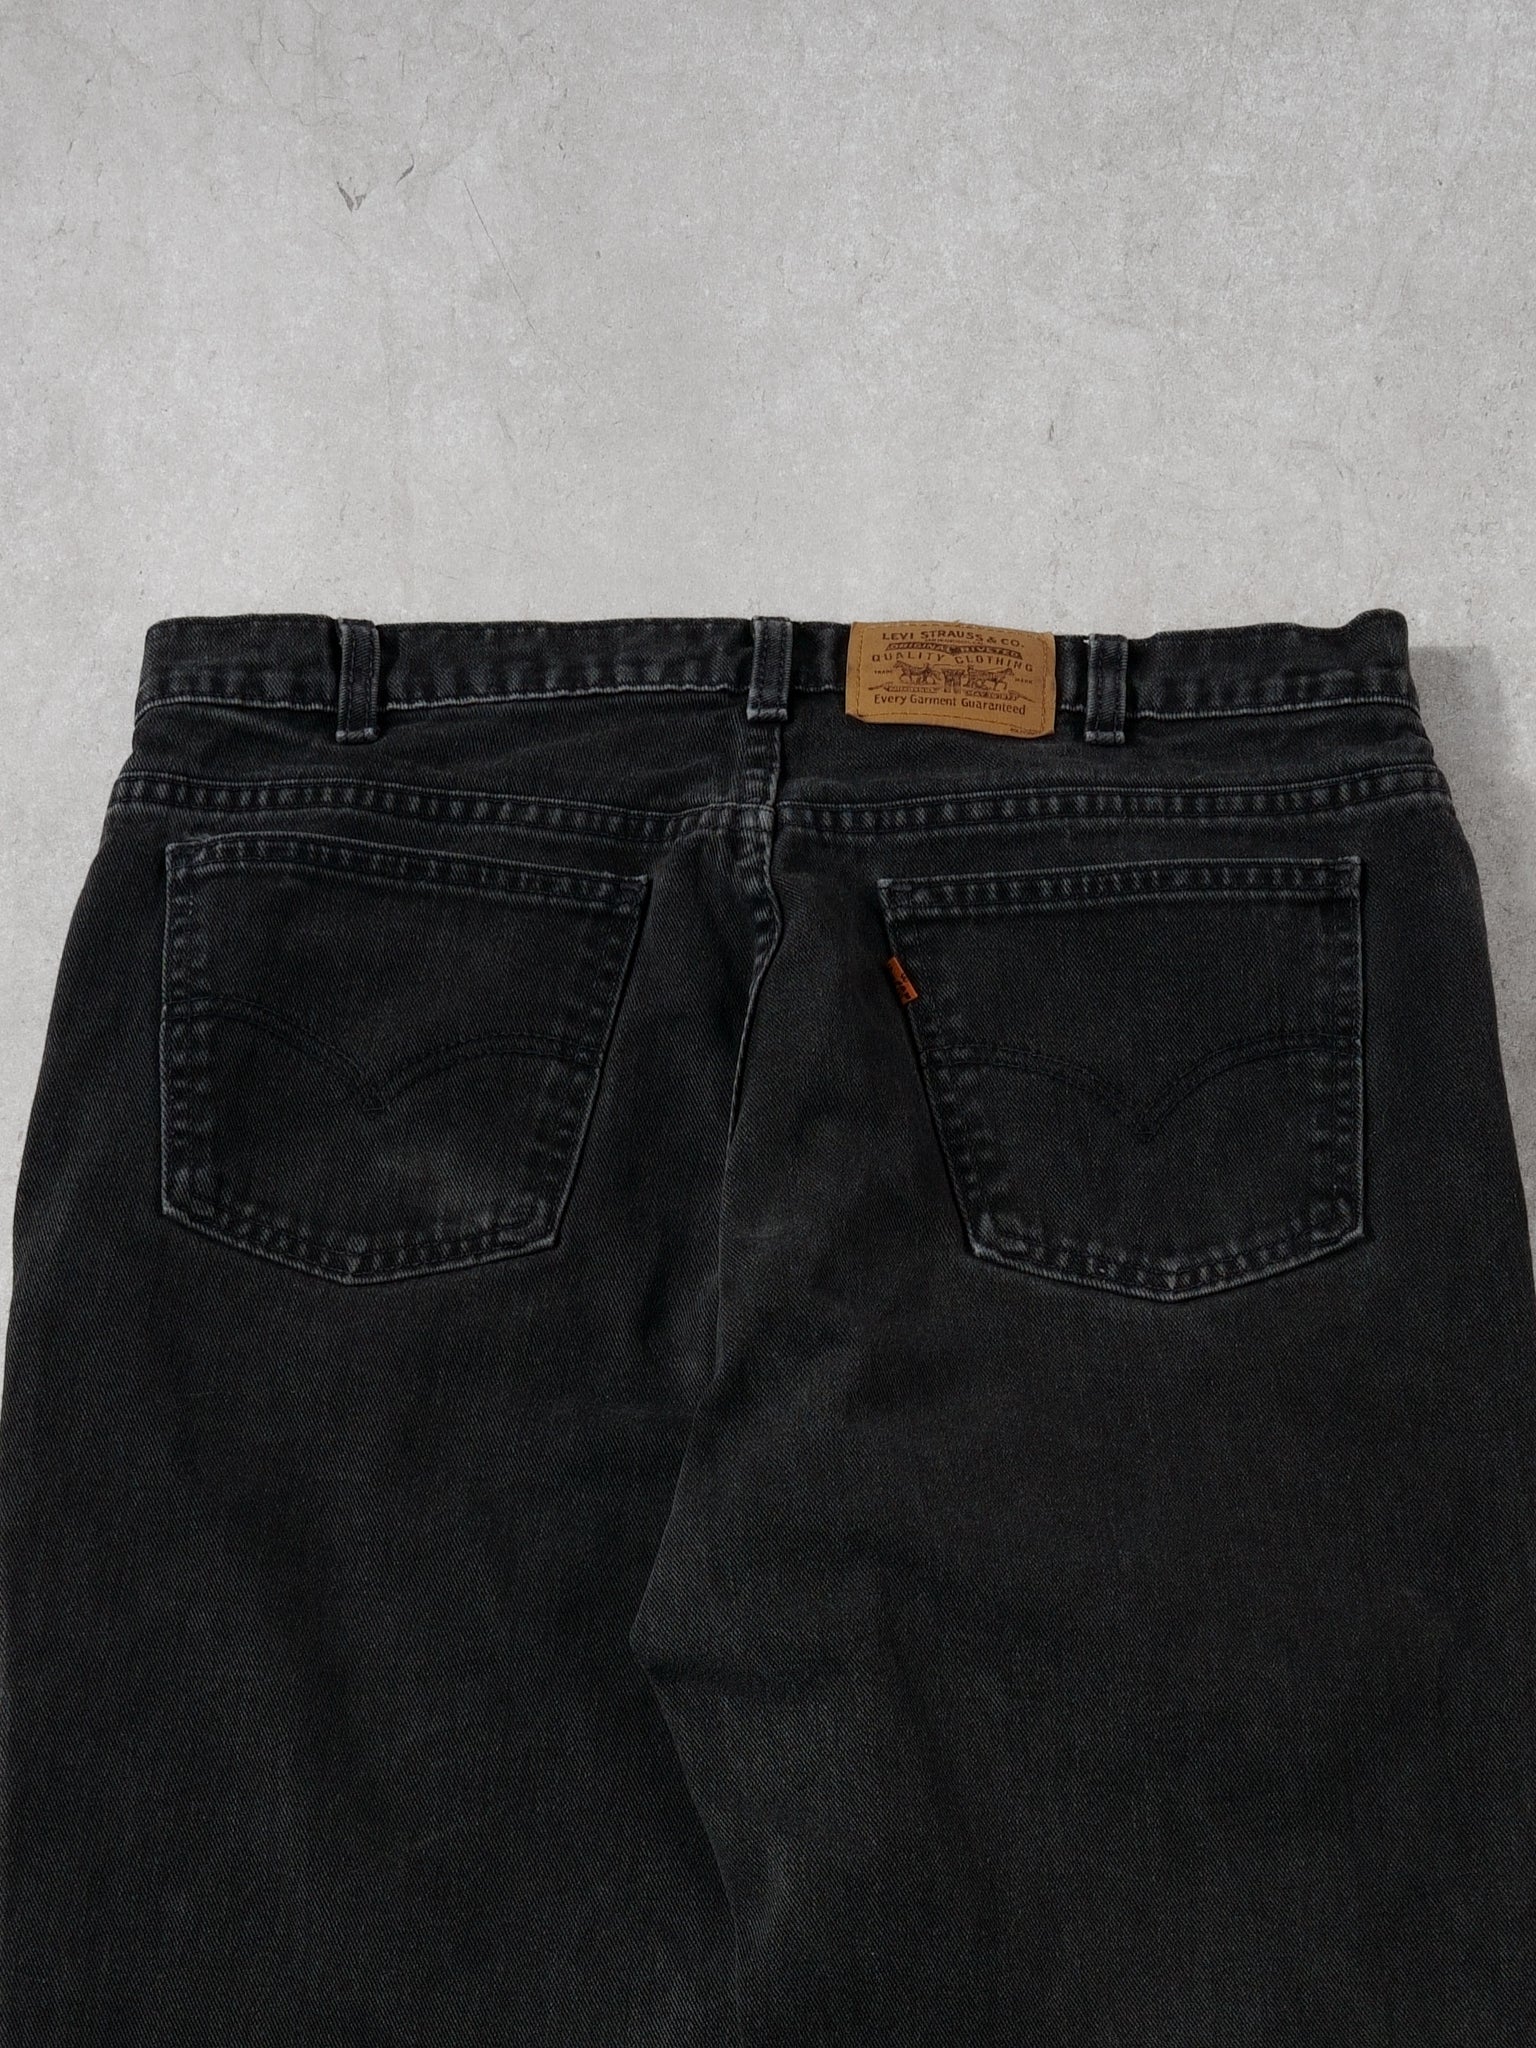 Vintage 80s Black Levi Denim Jeans (34 x 31)